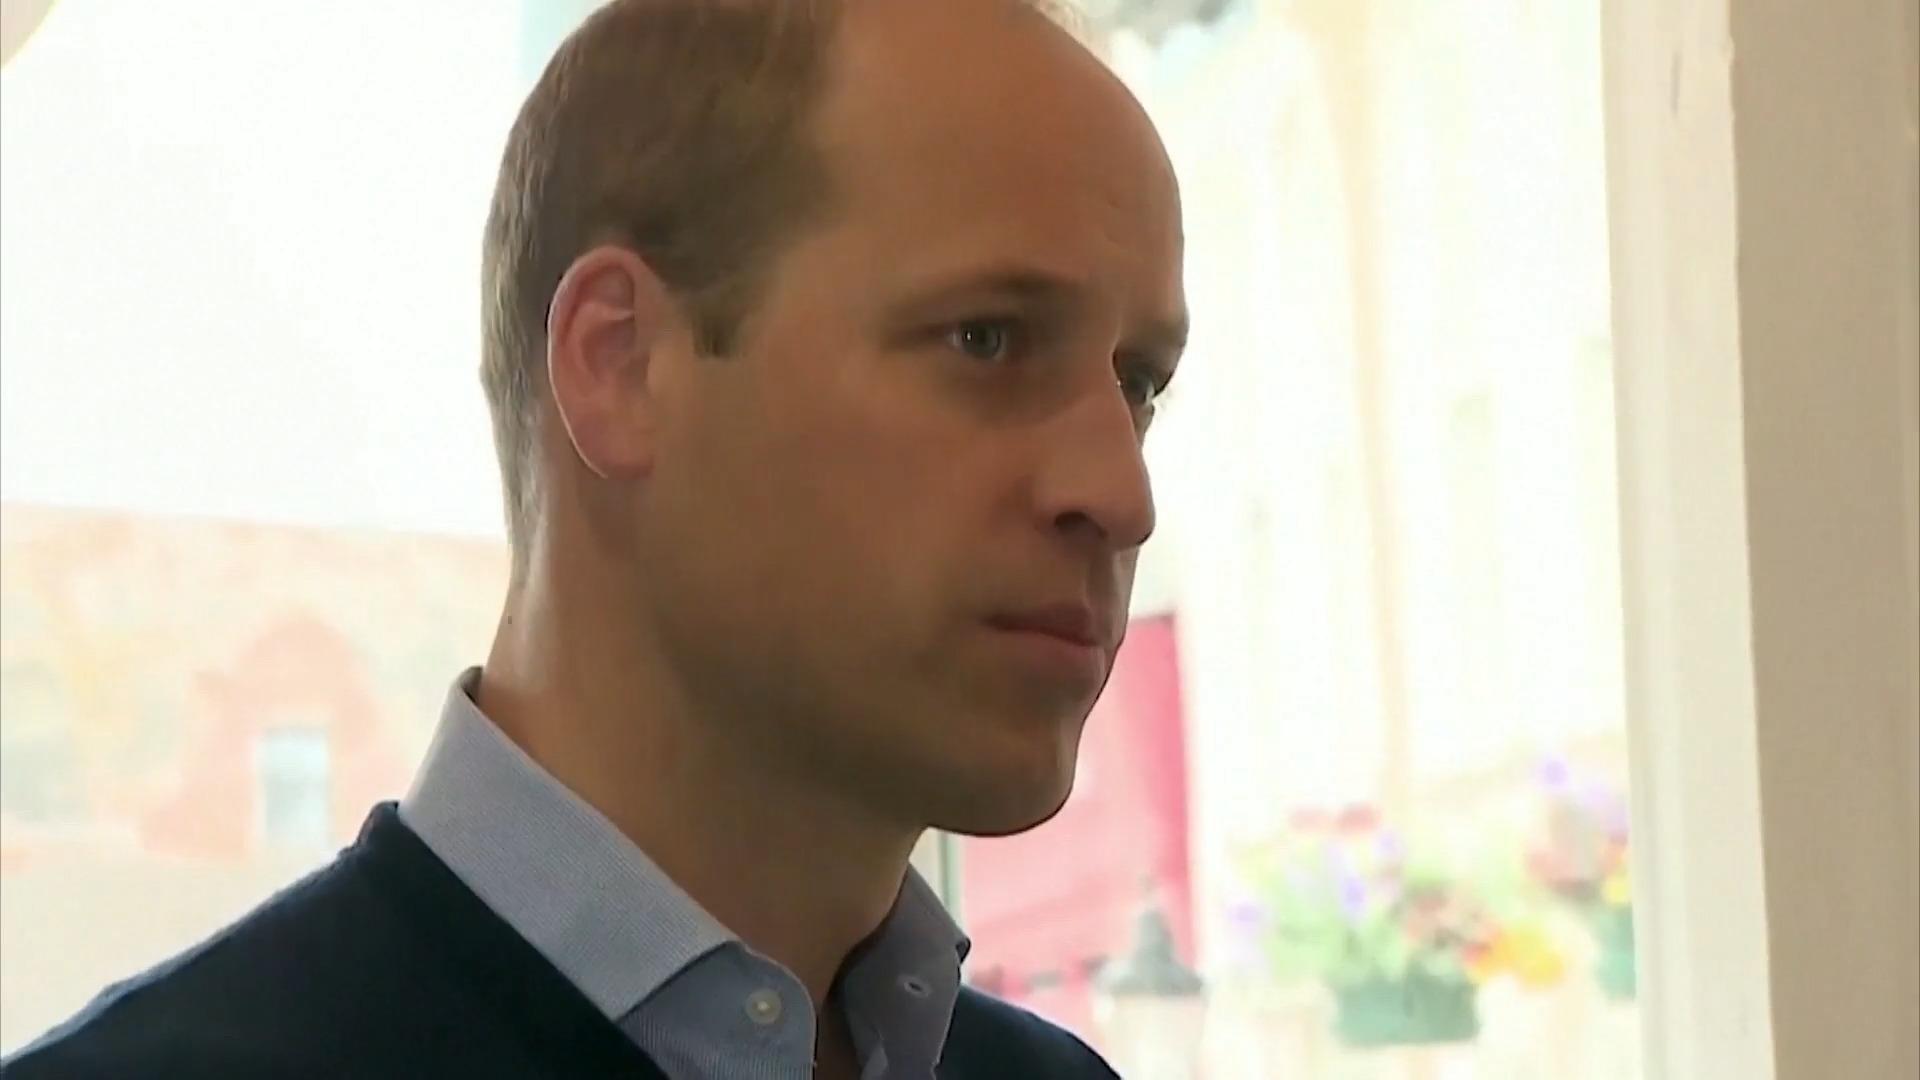 Todos los ojos están puestos en William, el Príncipe de Gales ahora segundo en la línea de sucesión al trono.